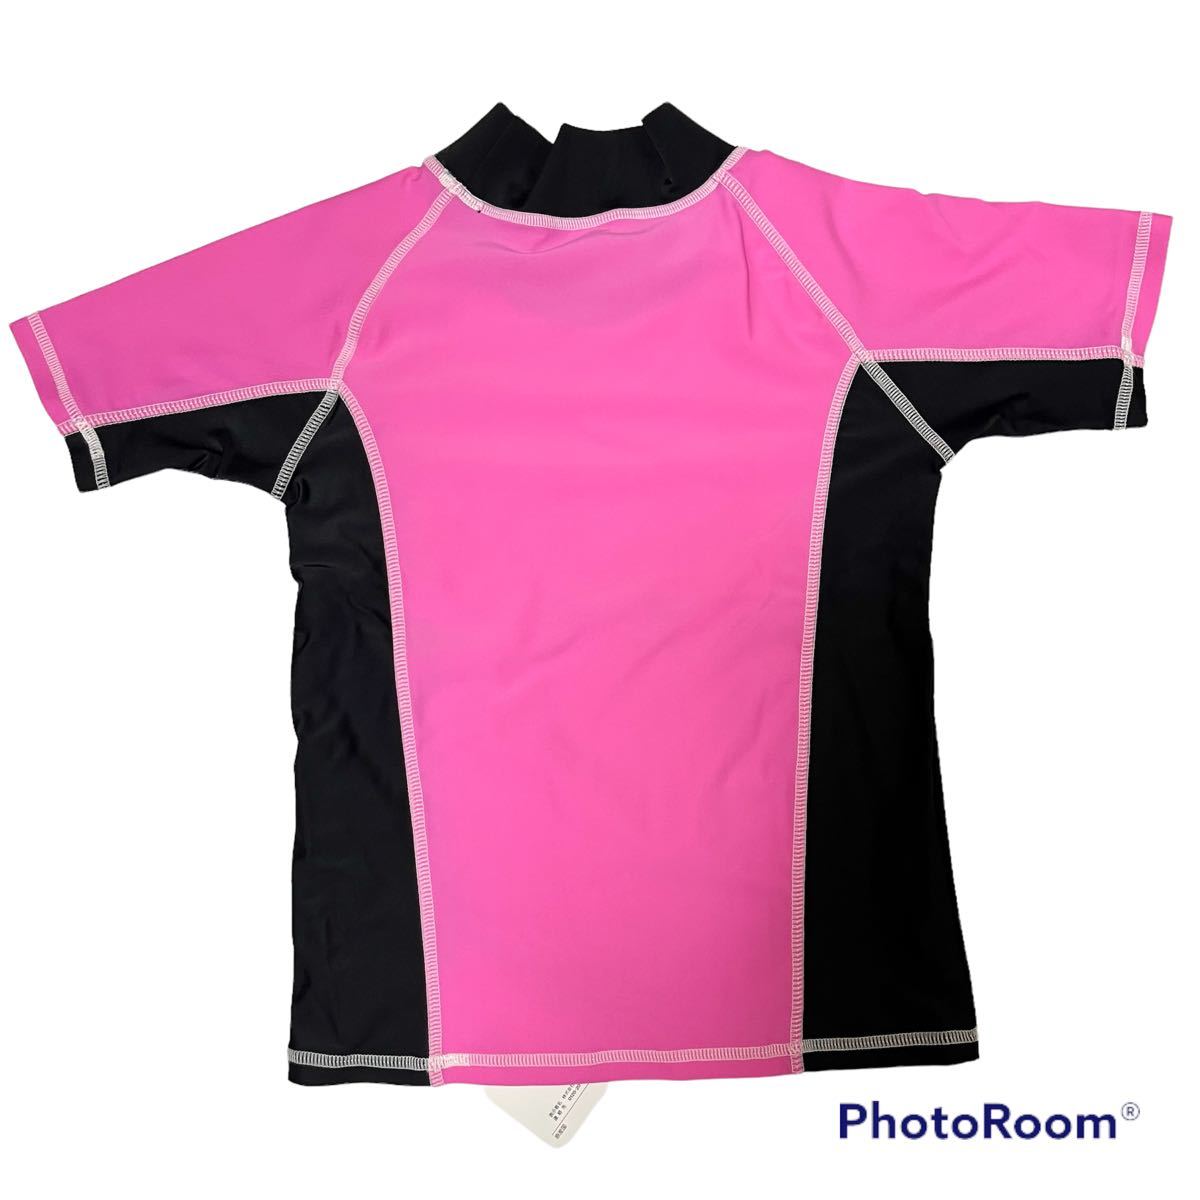  новый товар Rush Guard 130cm купальный костюм tops короткий рукав розовый 130 см море бассейн морская вода . солнцезащитное средство nisen размер 130 симпатичный 